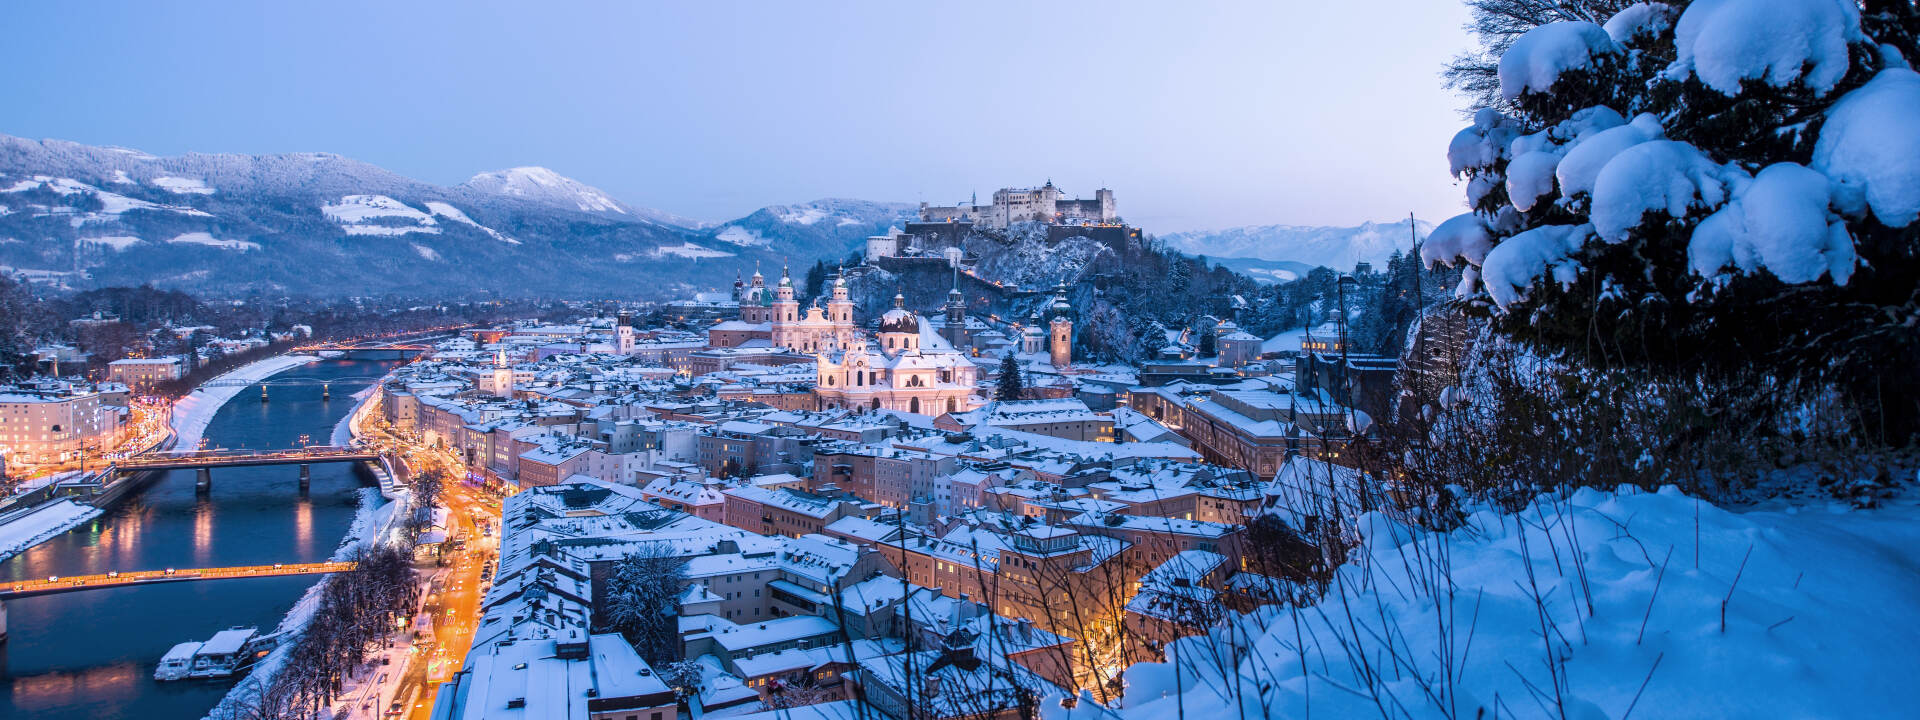 Salzburg - twilight in winter © Tourismus Salzburg